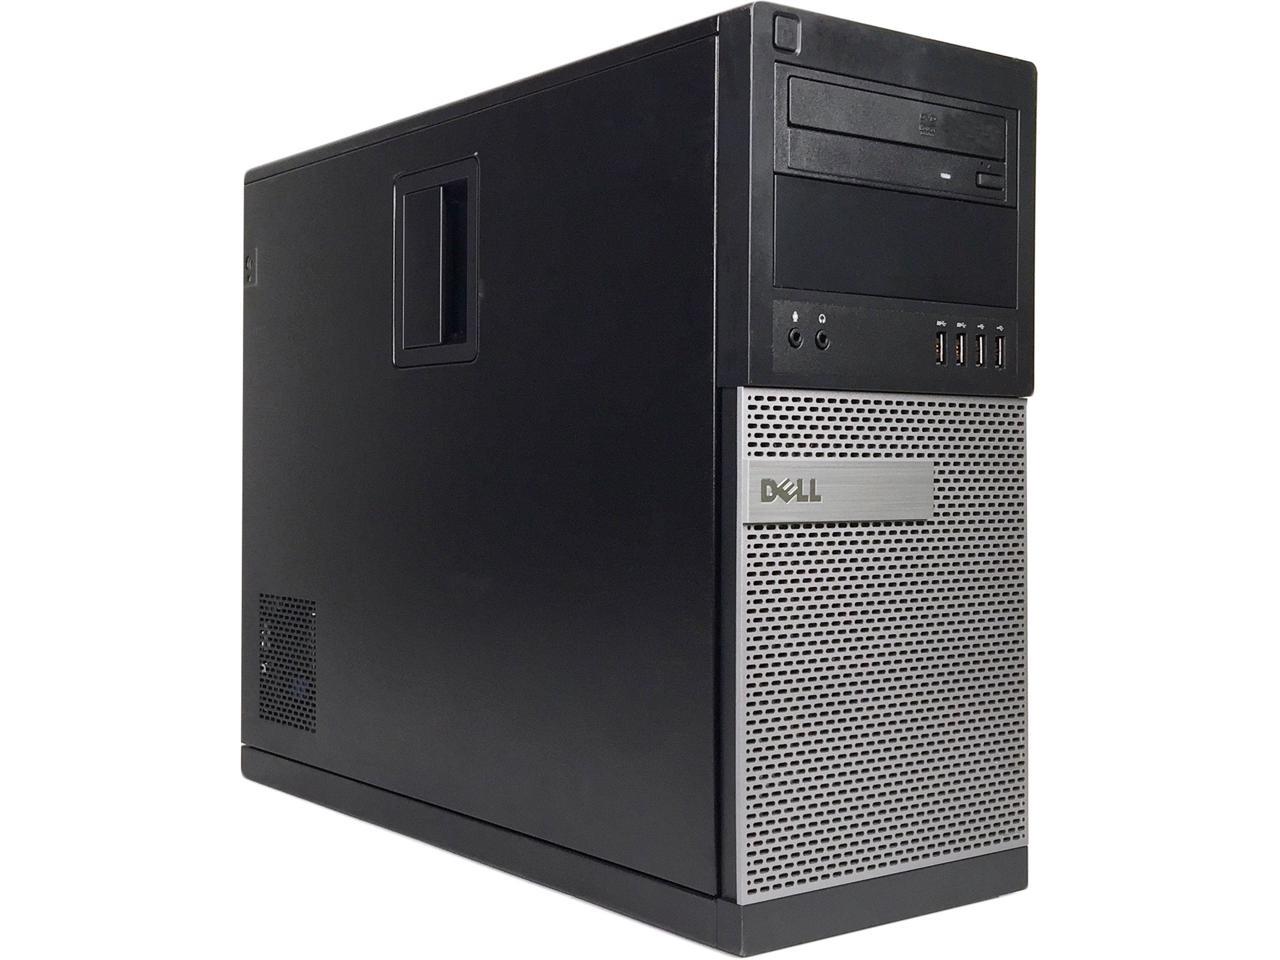 DELL Desktop Computer OptiPlex 7010 Intel Core i3 3rd Gen 3220 (3.30